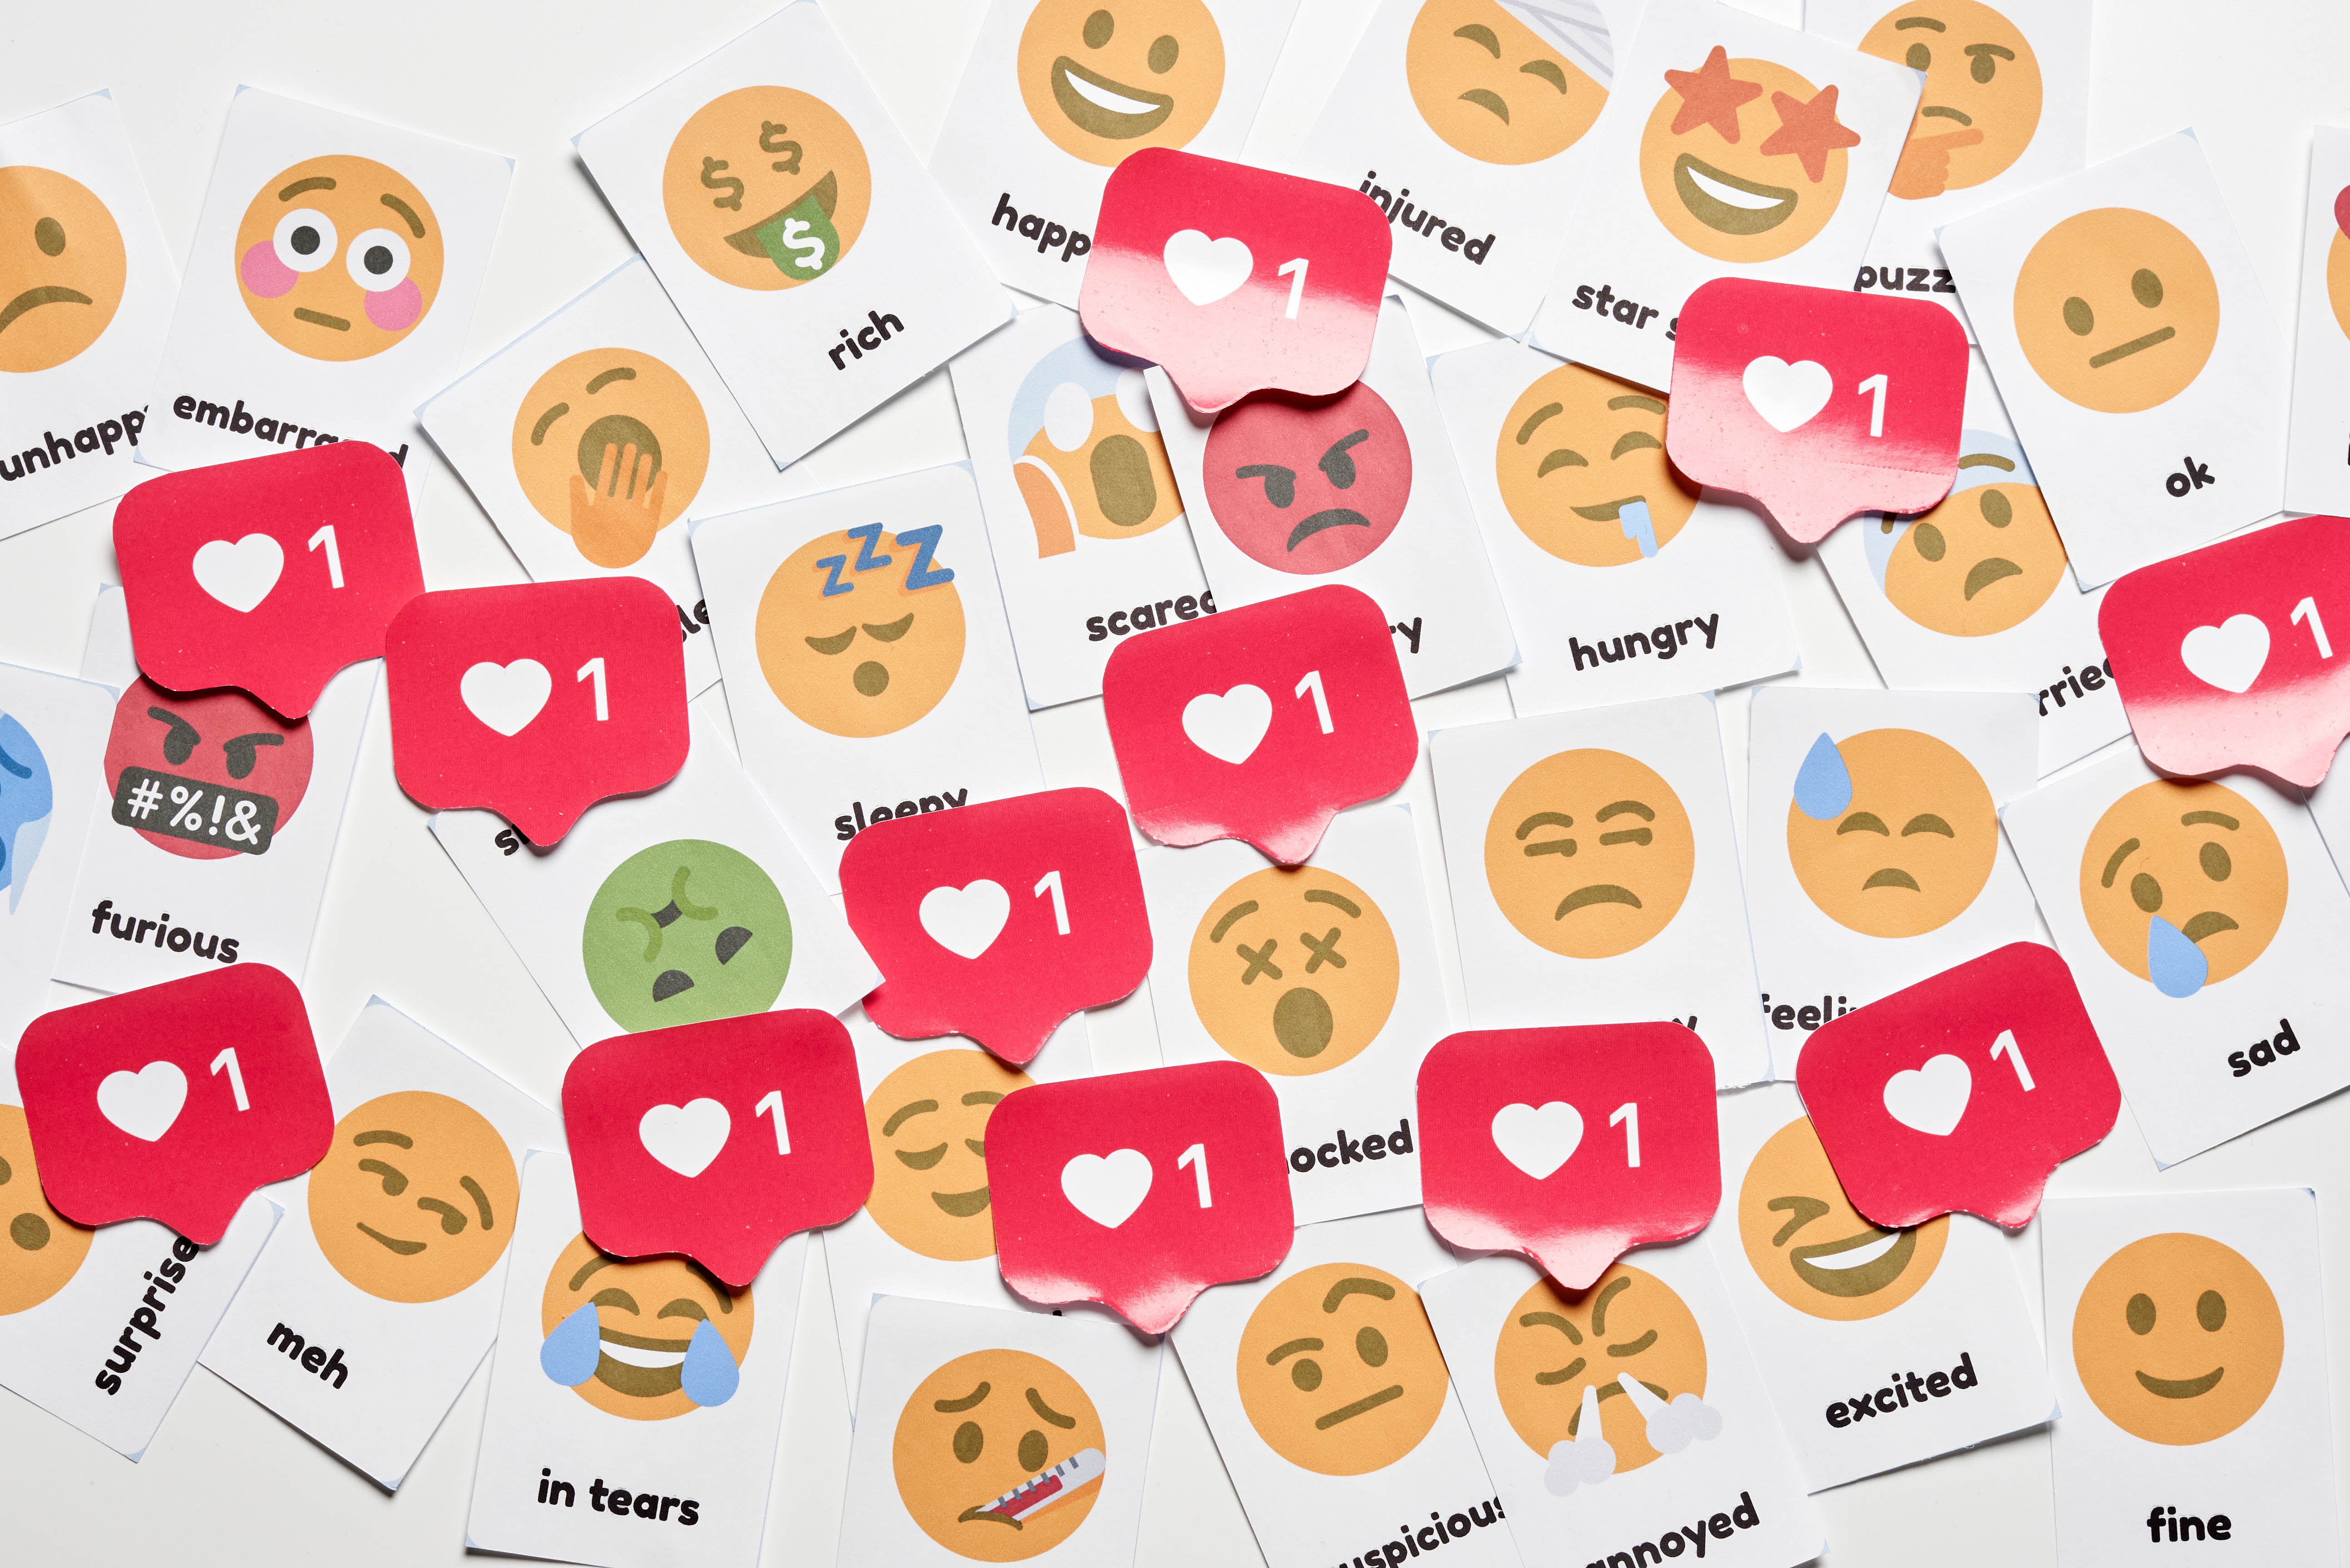 emoji, miscellaneous, emoticons, smileys, miscellanea, stickers, likes 32K